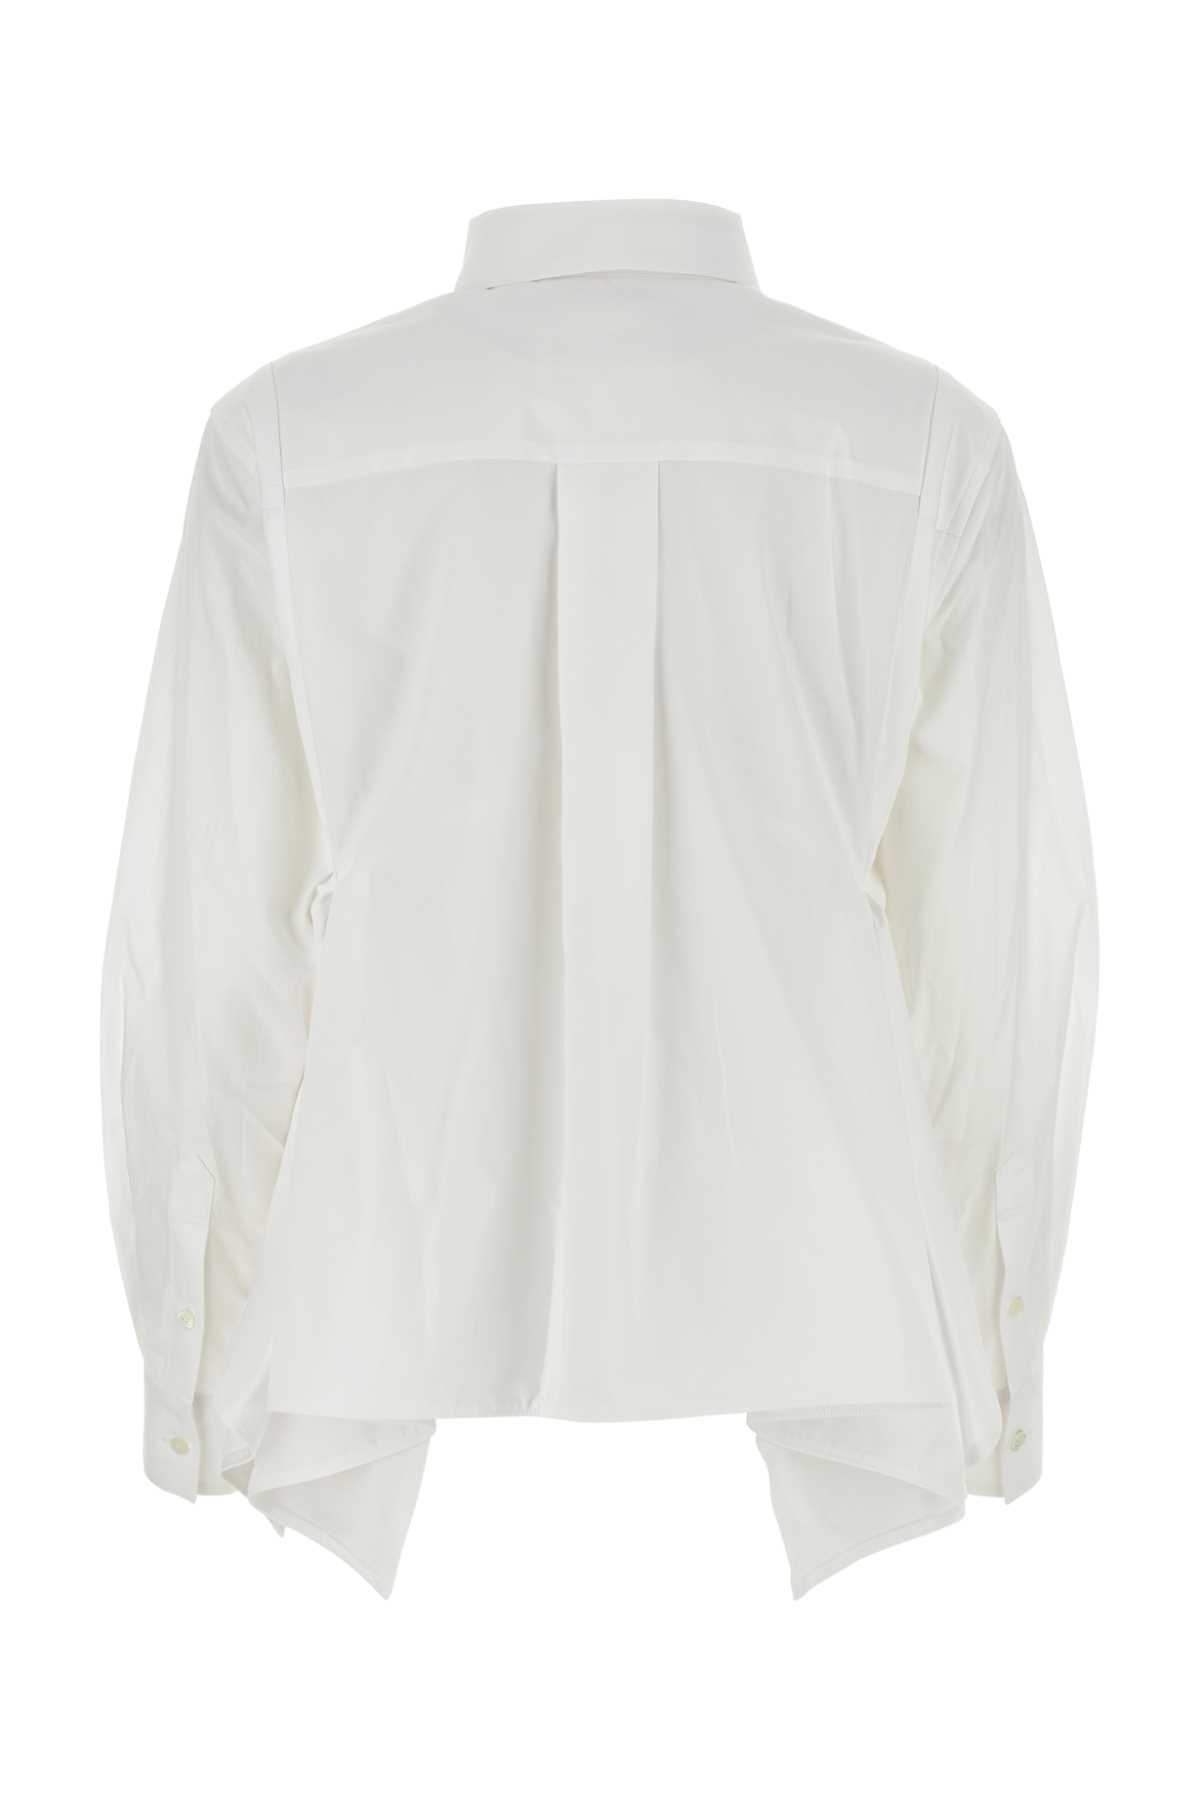 Sacai White Cotton Shirt In Offwhite